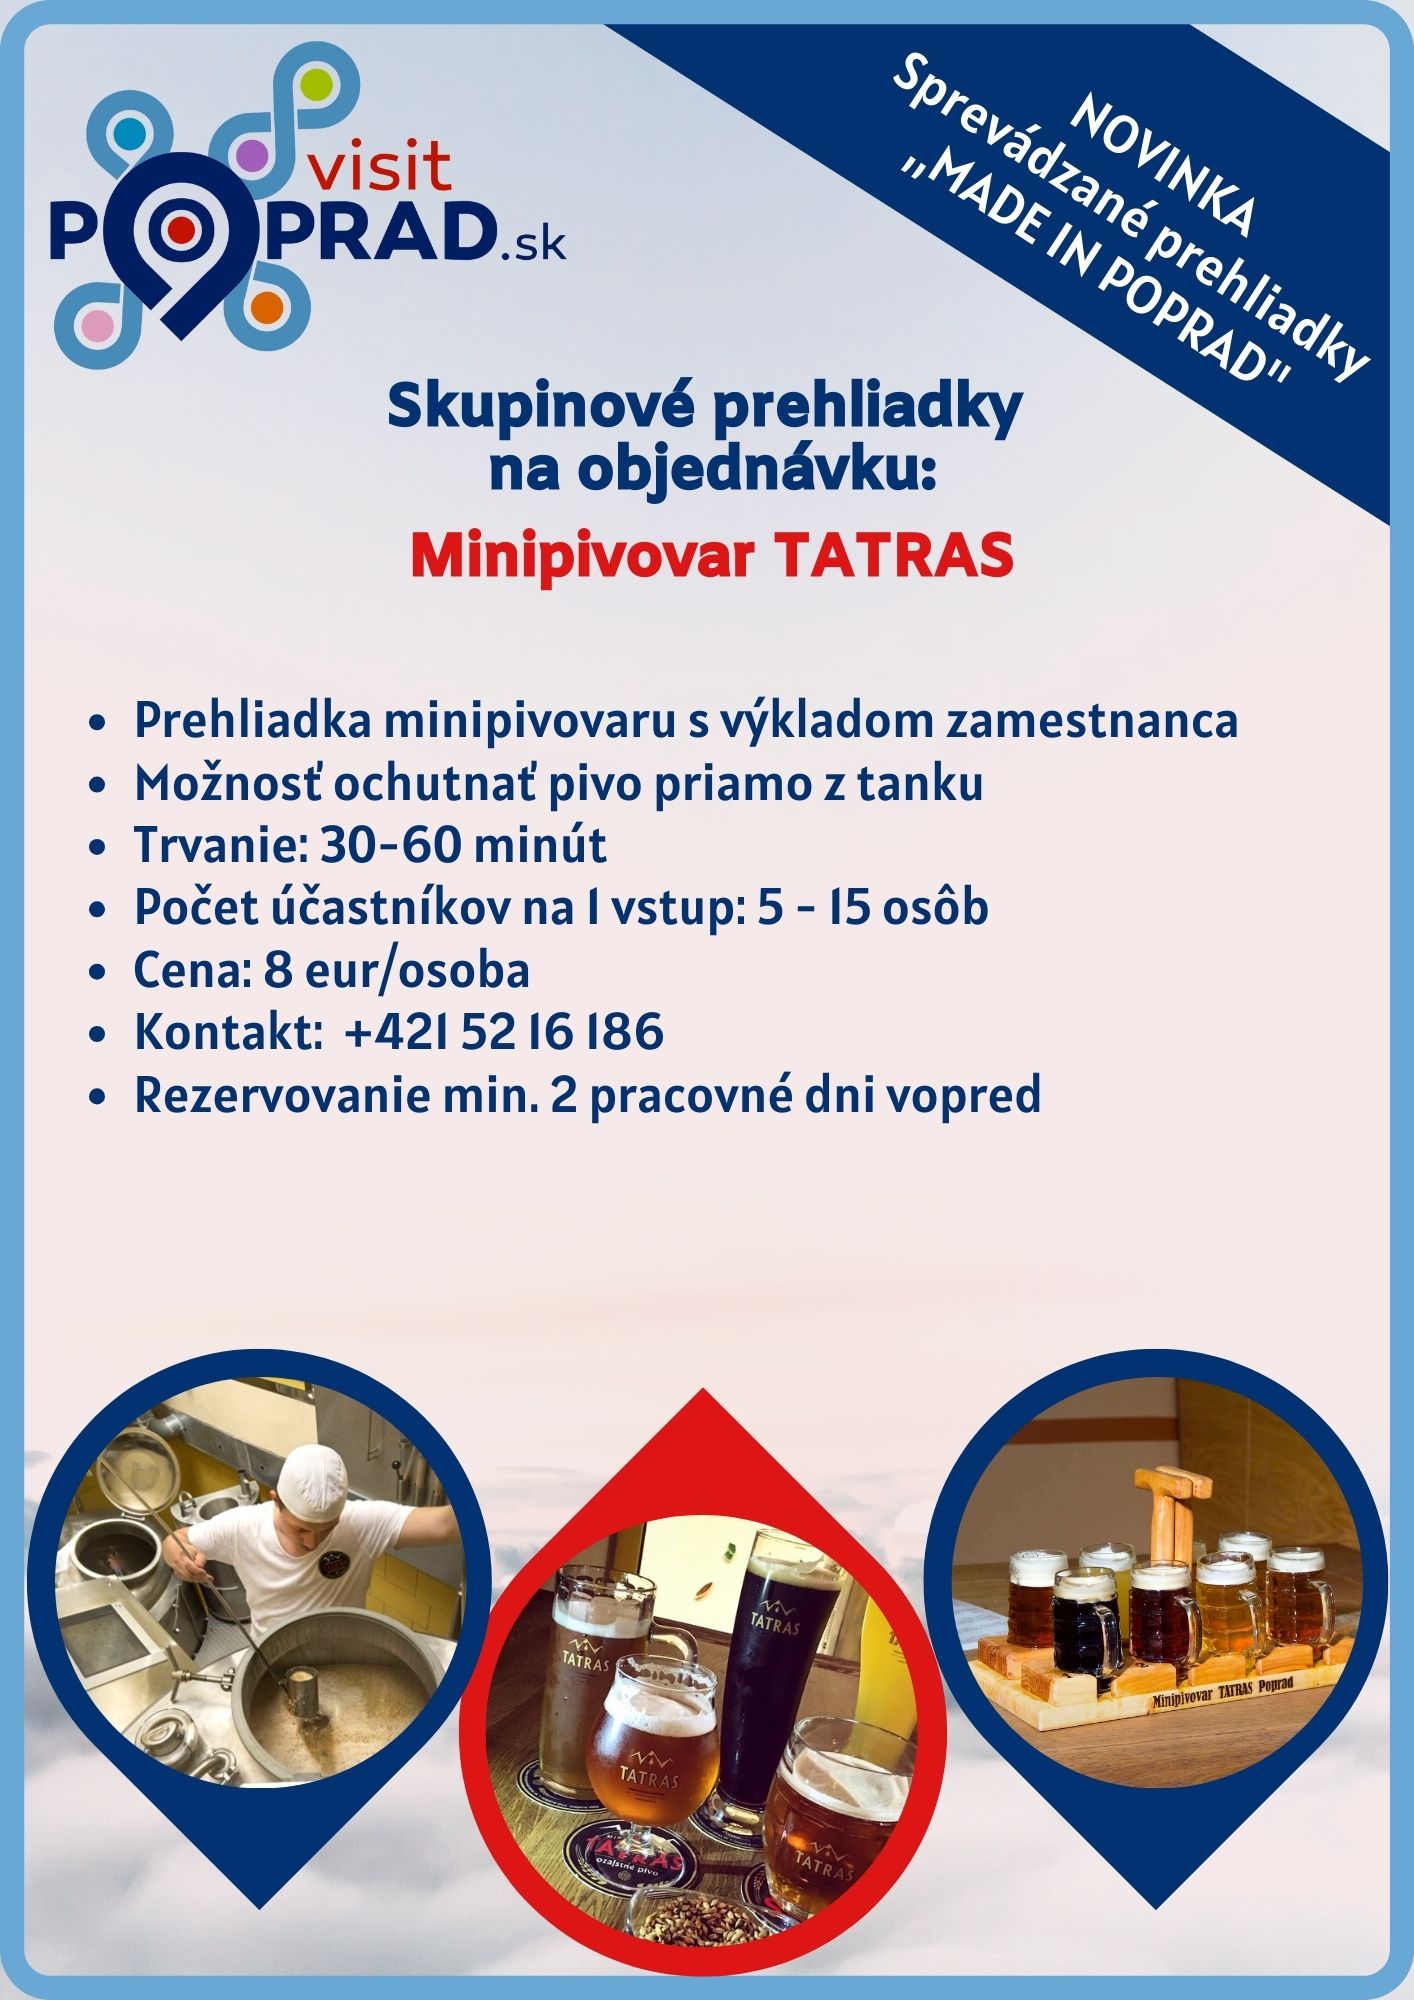 Made in Poprad – Minipivovar TATRAS (Trvanie: 30 minút),Cena: 8 €